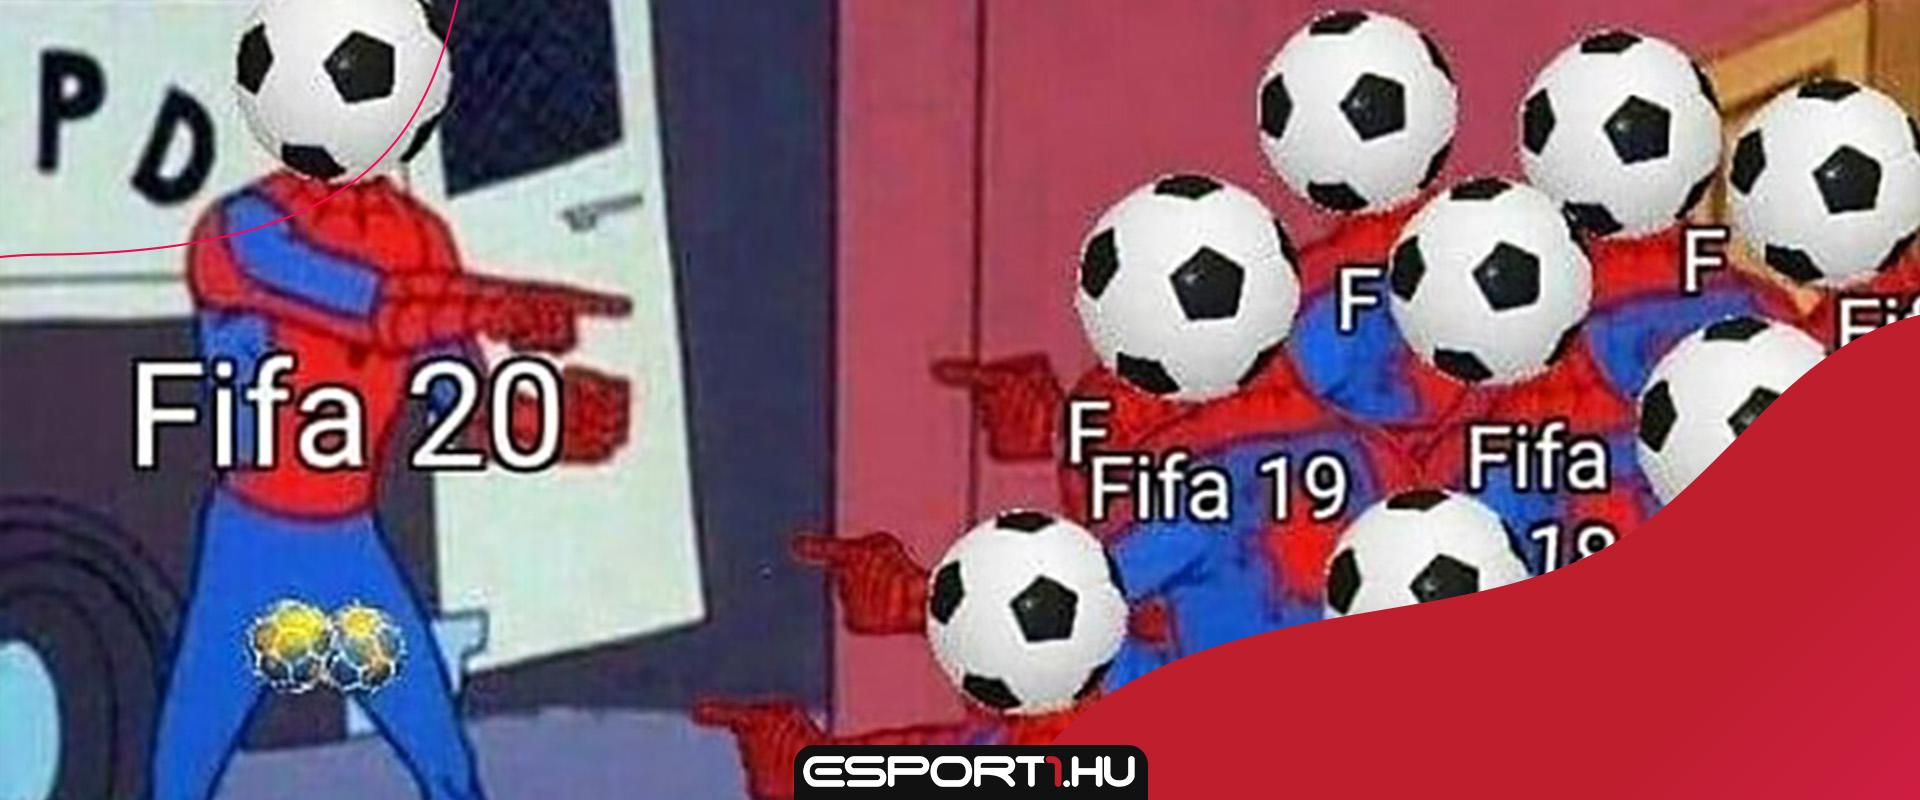 Ilyen az, amikor nem enged nyerni az EA FIFA 21-ben